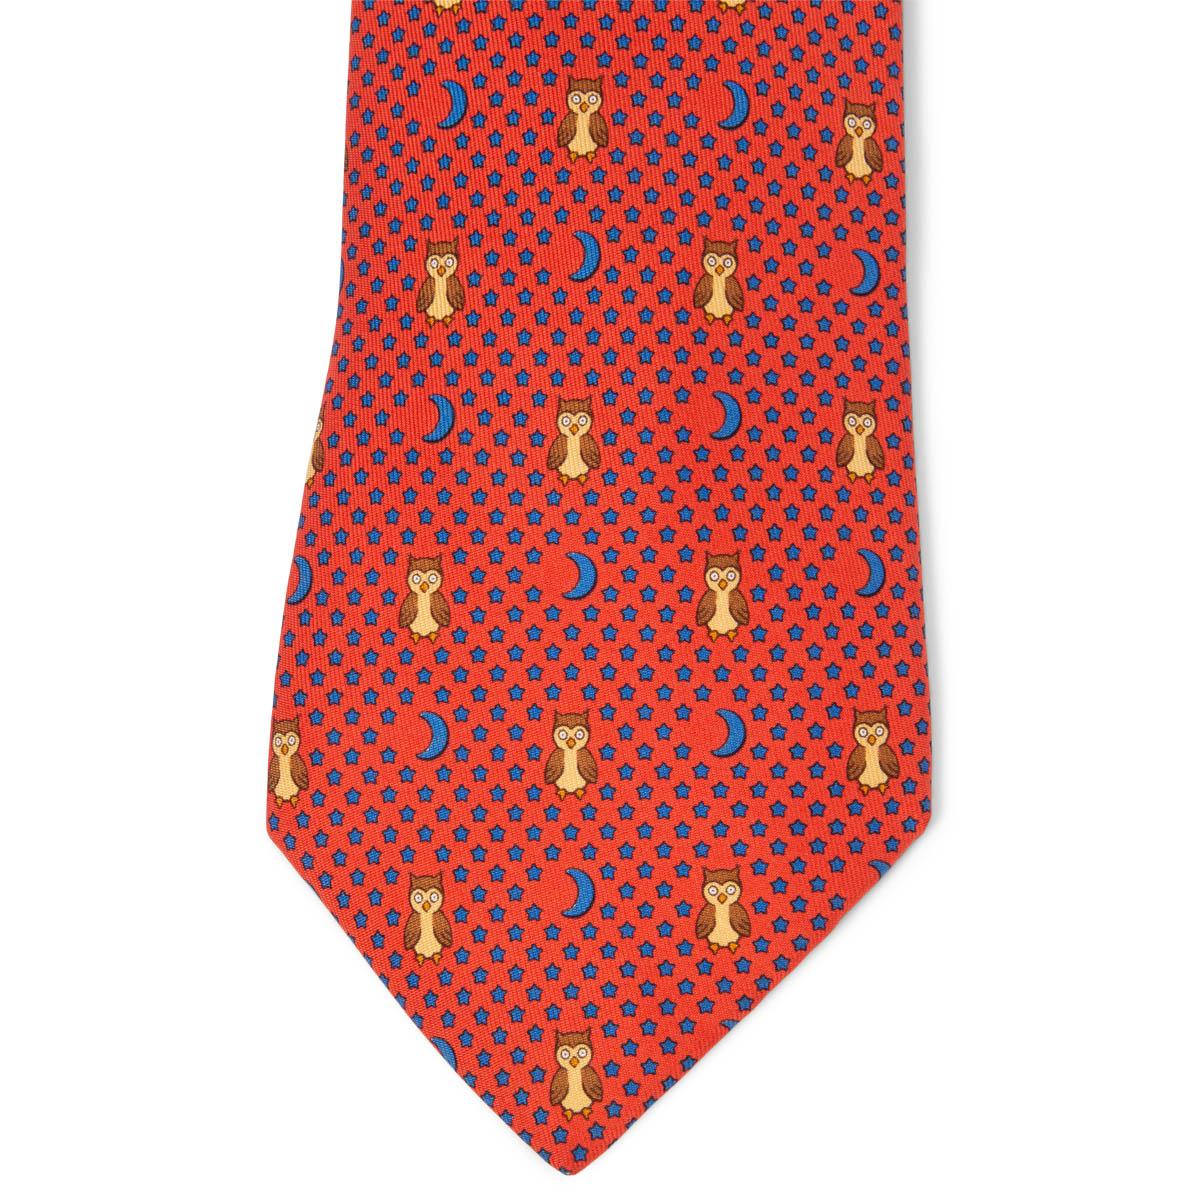 Cravates Hermès Night Owl 100% authentiques en twill de soie orange, bleu et marron (100%). A été porté et est en excellent état. Pas de boîte.

Mesures
Modèle	7997
Longueur	156cm (60.8in)
Point le plus large	9cm (3.54in)

Toutes nos annonces